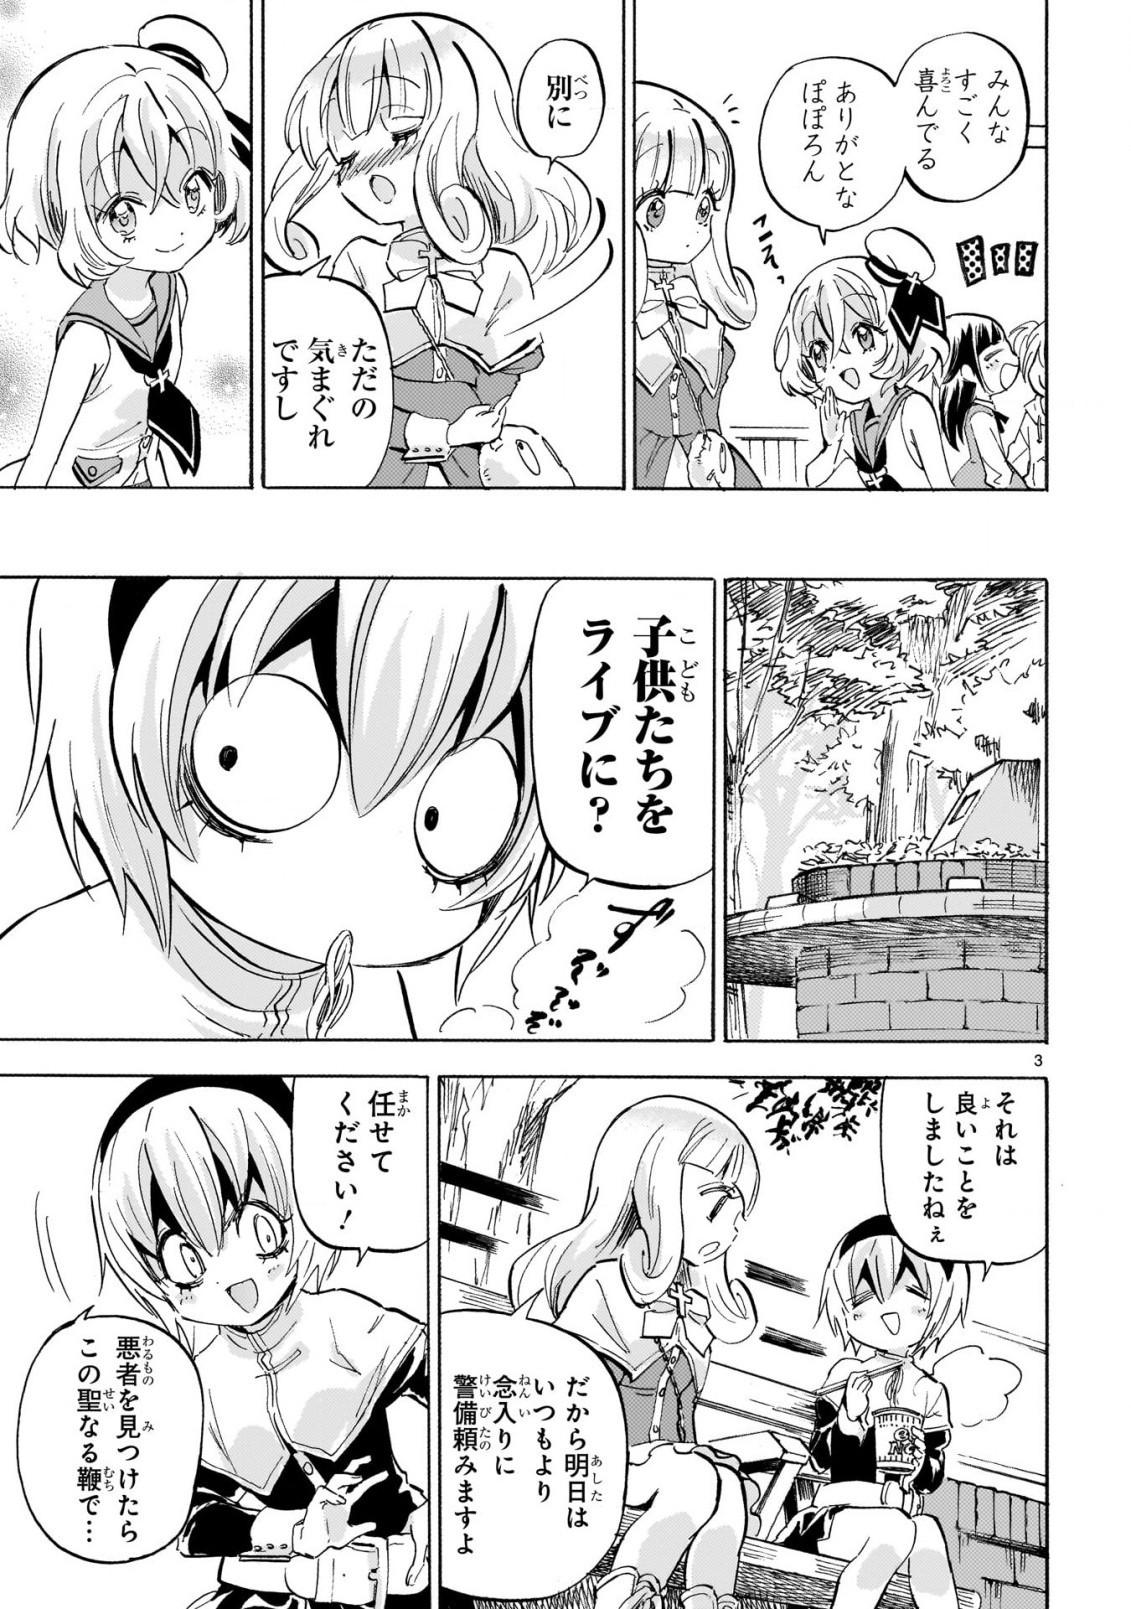 Jashin-chan Dropkick - Chapter 228 - Page 3